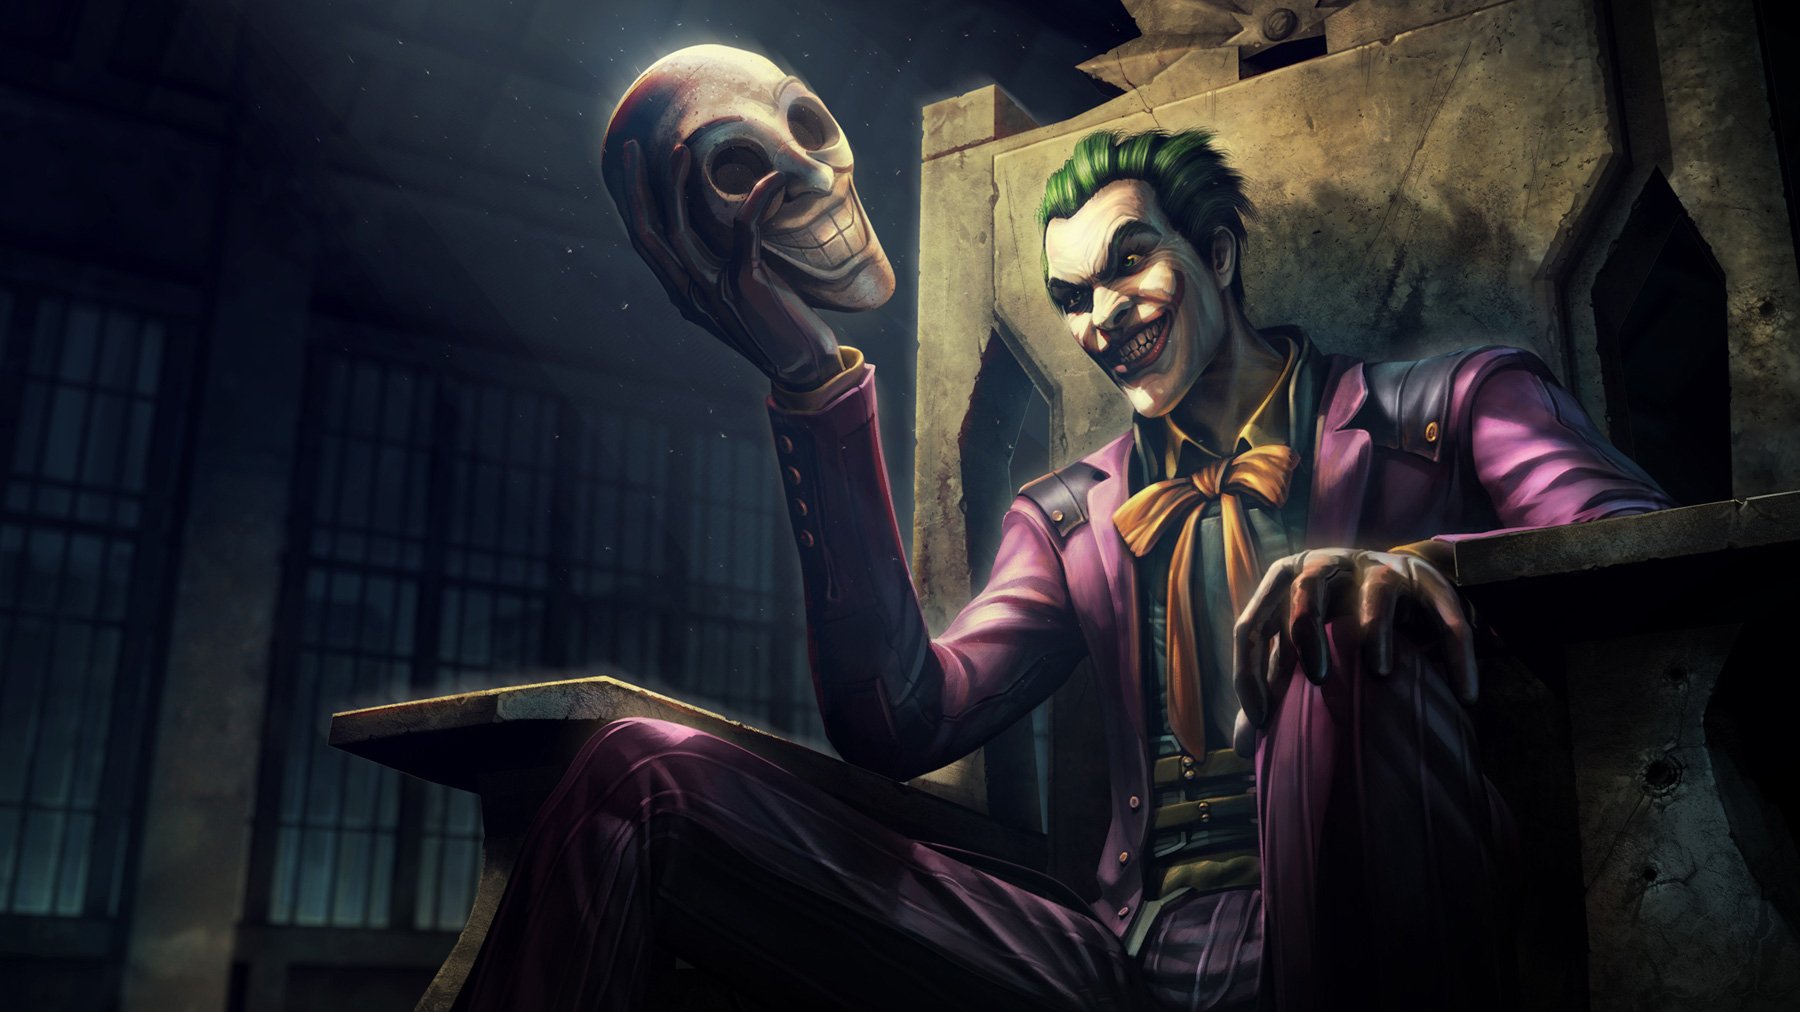 Unduh 900 Koleksi Gambar Game Joker Paling Baru 